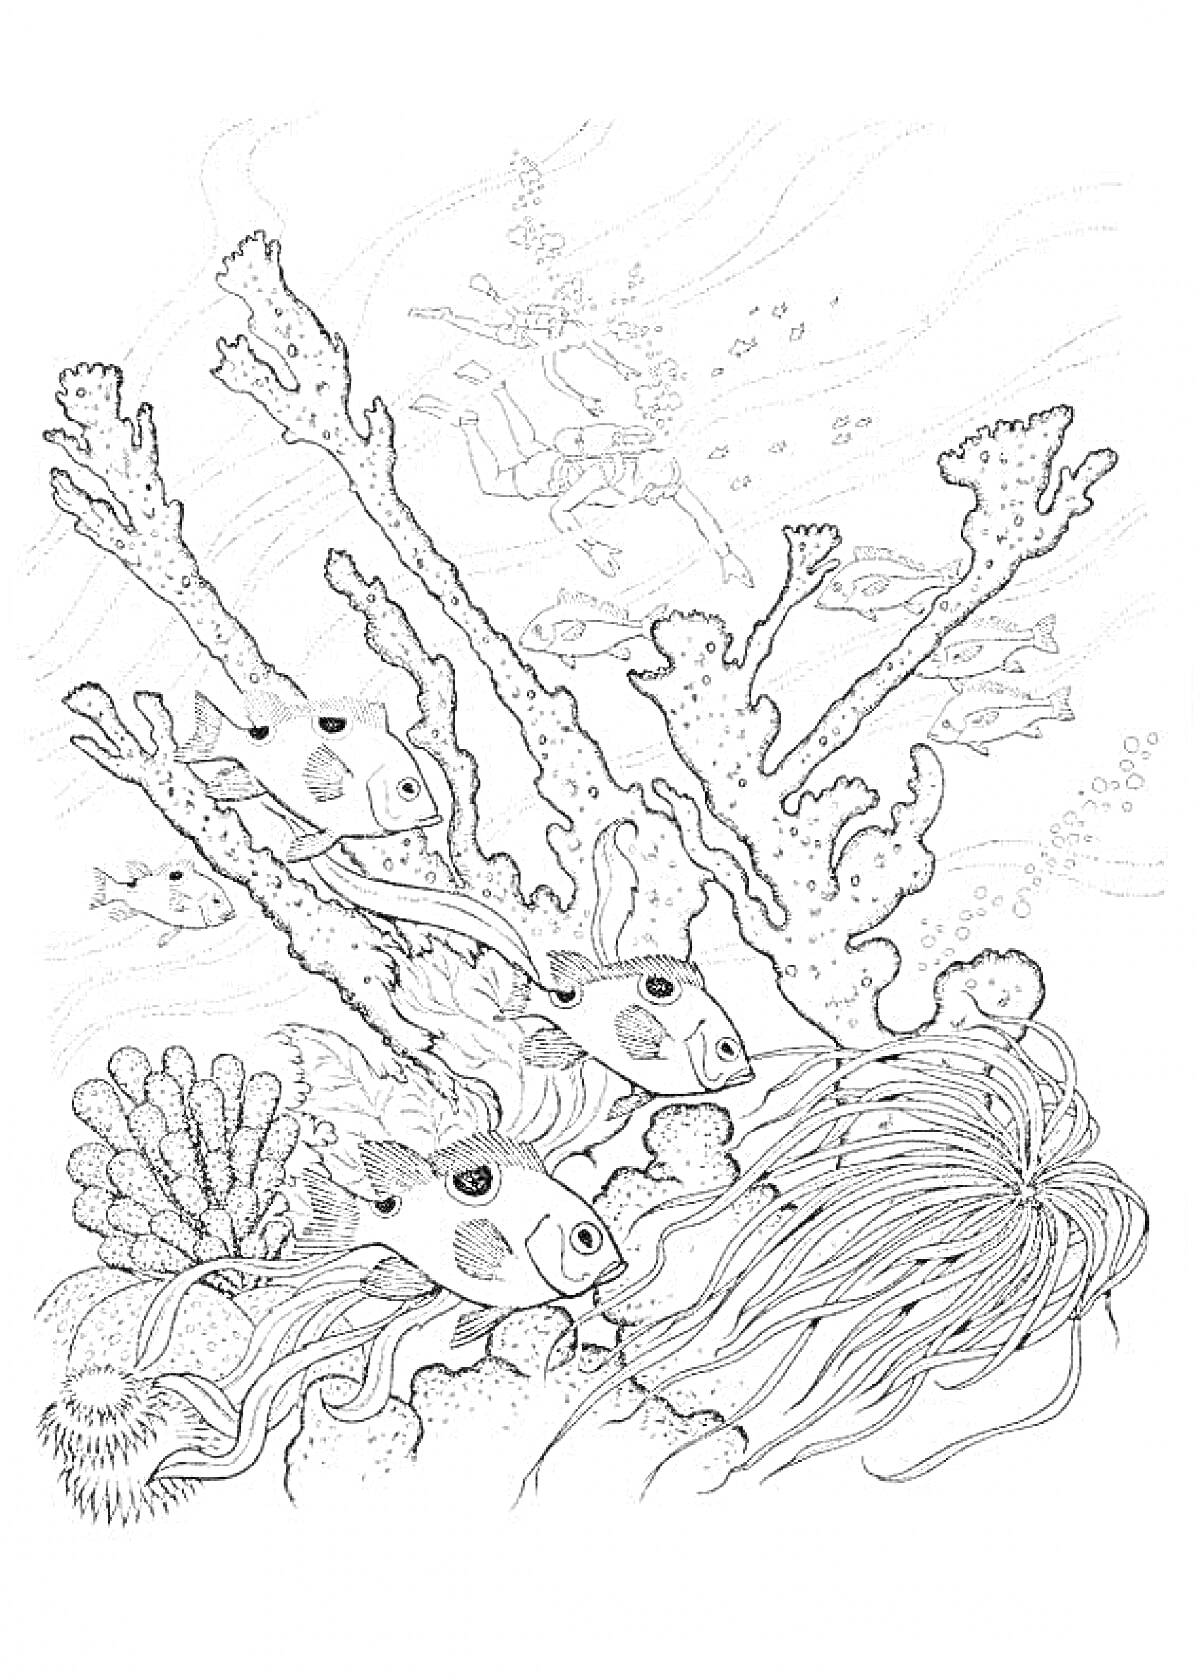 Раскраска Морское дно с кораллами, рыбами, водорослями и водолазом